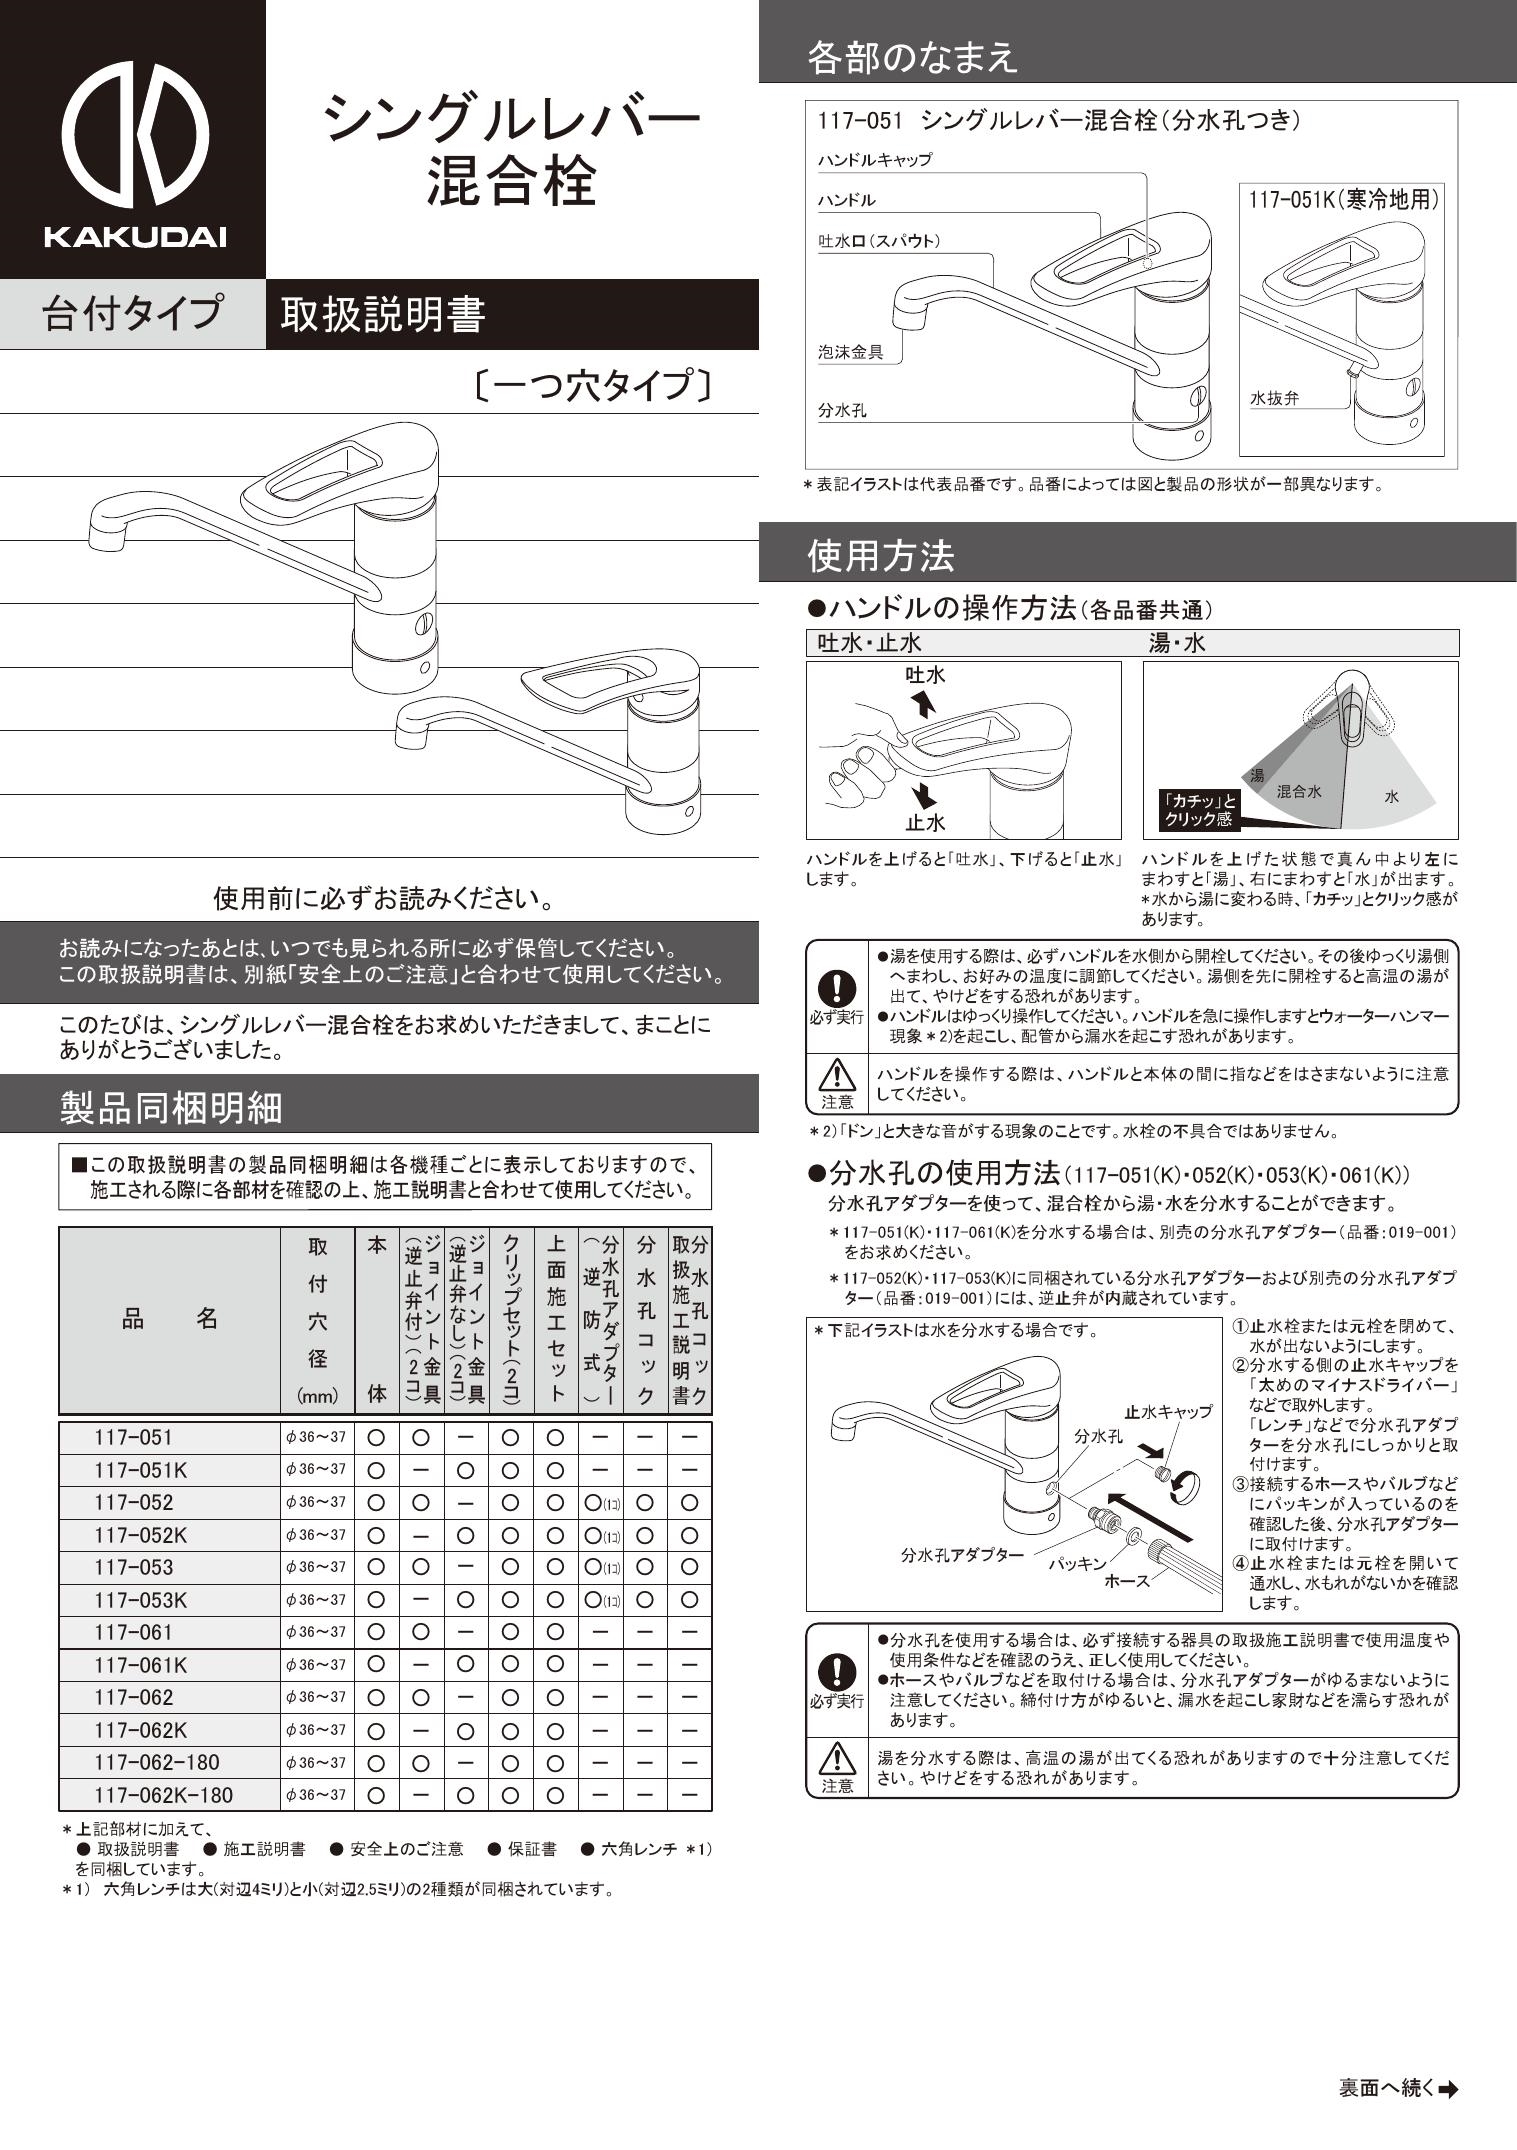 [117-061]KAKUDAI シングルレバー混合栓(分水孔つき)カクダイ(117061) - 8